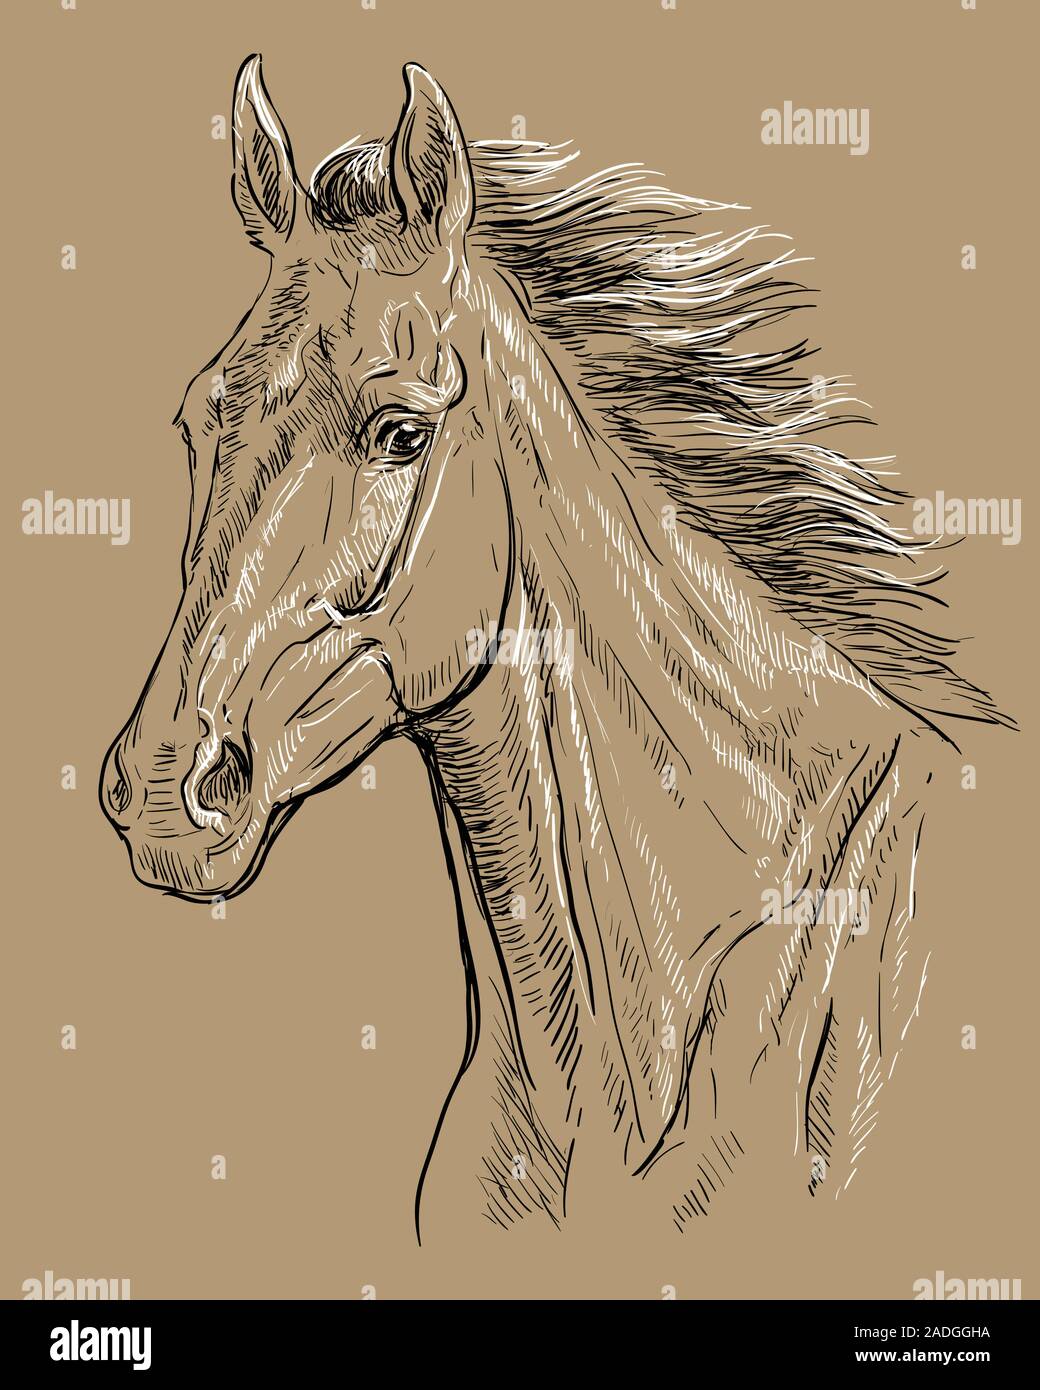 Hand Zeichnung Pferd portrait. Pferd Kopf mit langer Mähne in den Farben Schwarz und Weiß auf beige Hintergrund isoliert. Vektor hand Zeichnung Abbildung. Retro Stock Vektor